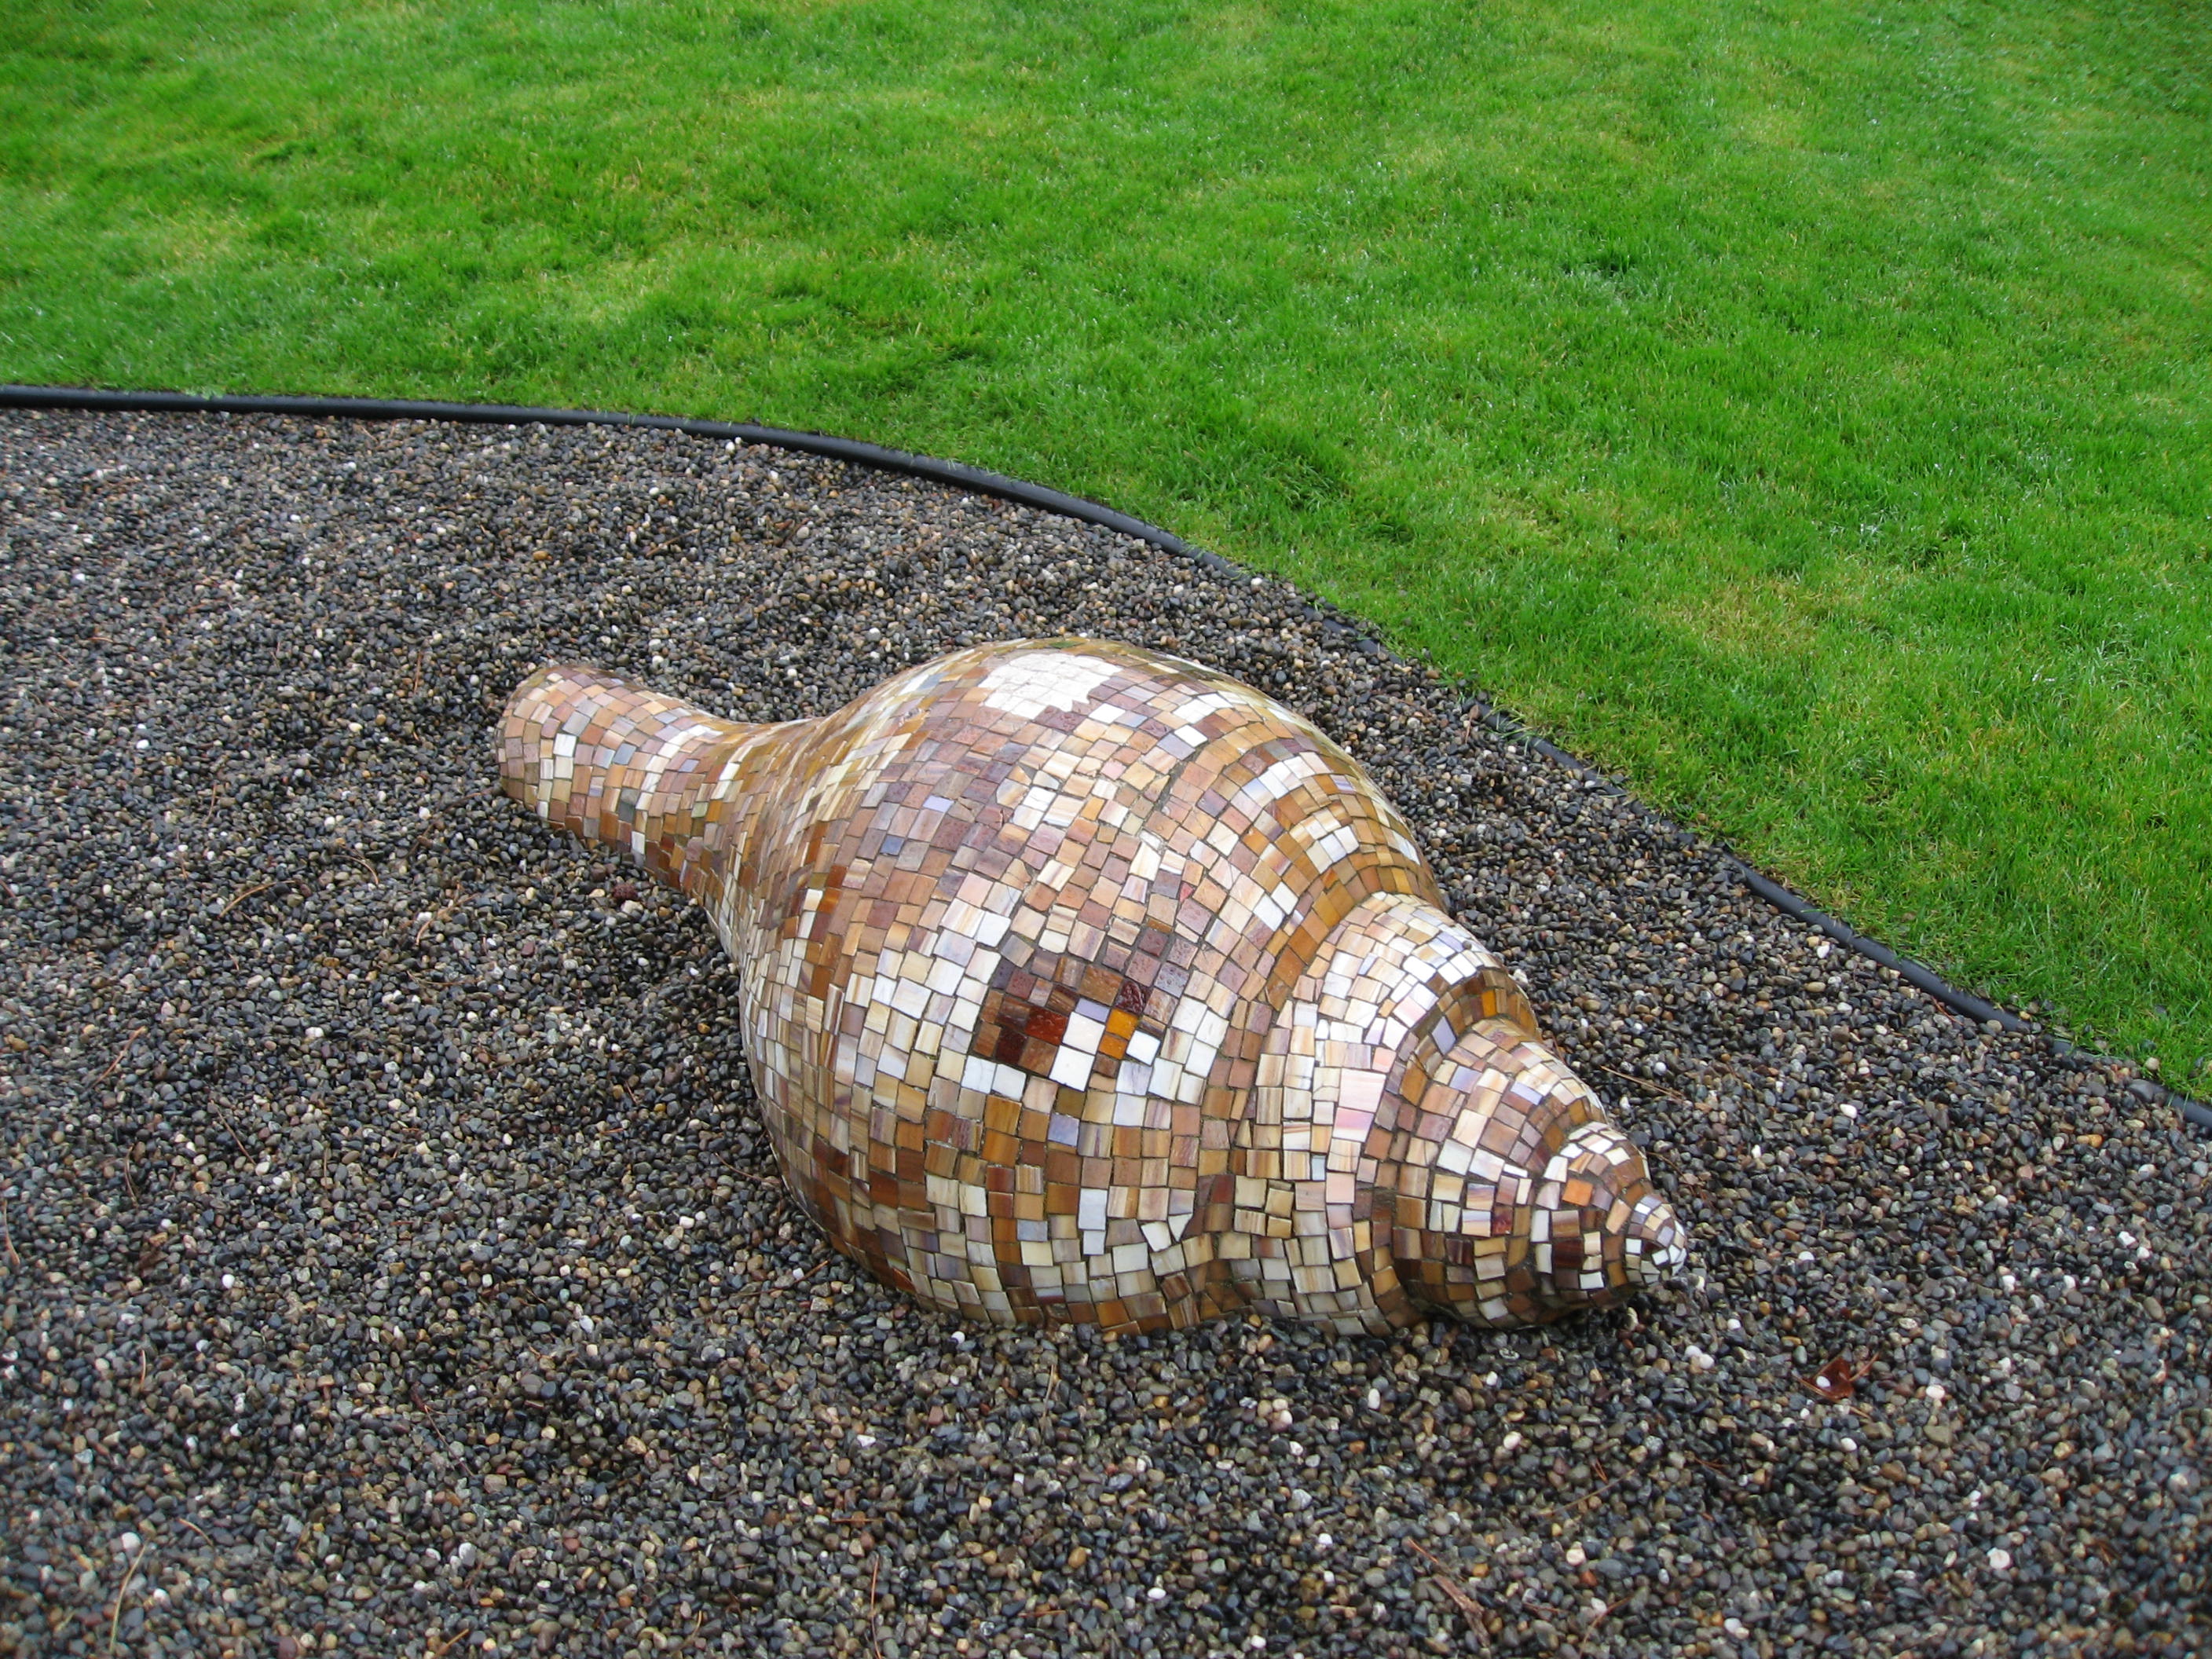 21-Seashell-mosaic1.jpg (2816×2112)